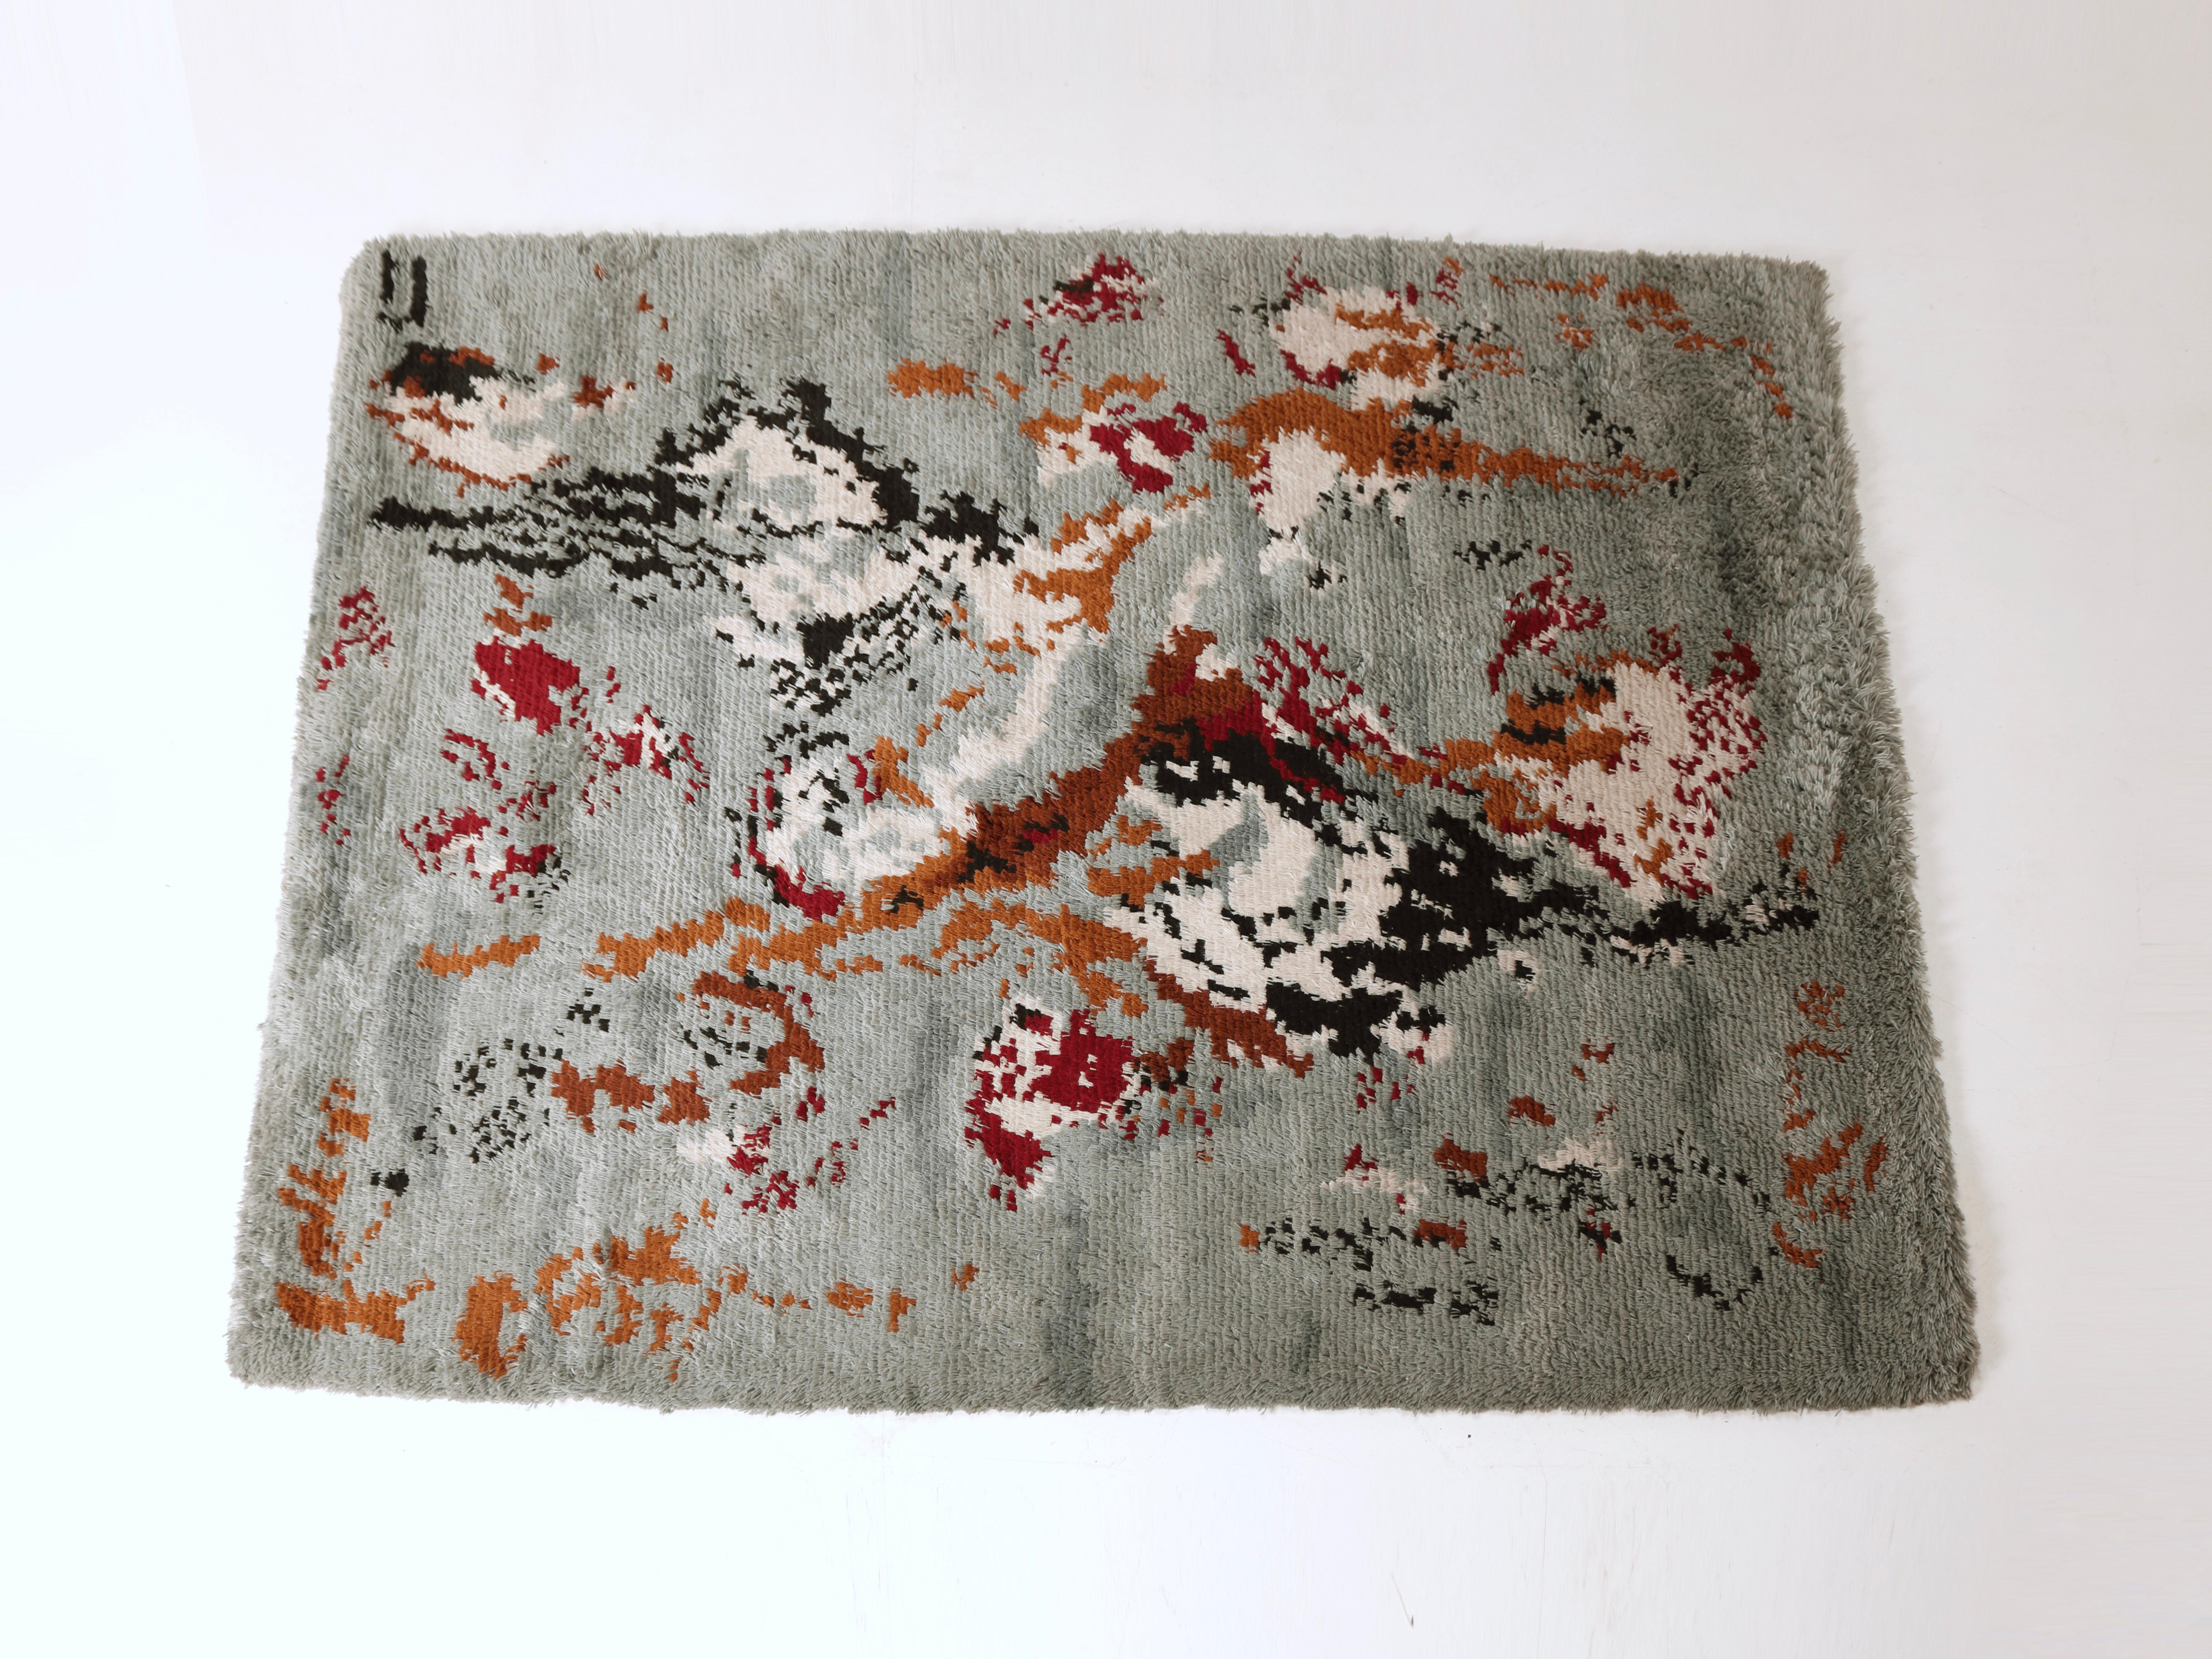 Le tapis polychrome en laine est une tapisserie vibrante de teintes, tissant un kaléidoscope de couleurs dans un revêtement de sol doux et luxueux. Ce chef-d'œuvre polychrome du Living in Design/One des années 70 ajoute une touche dynamique et